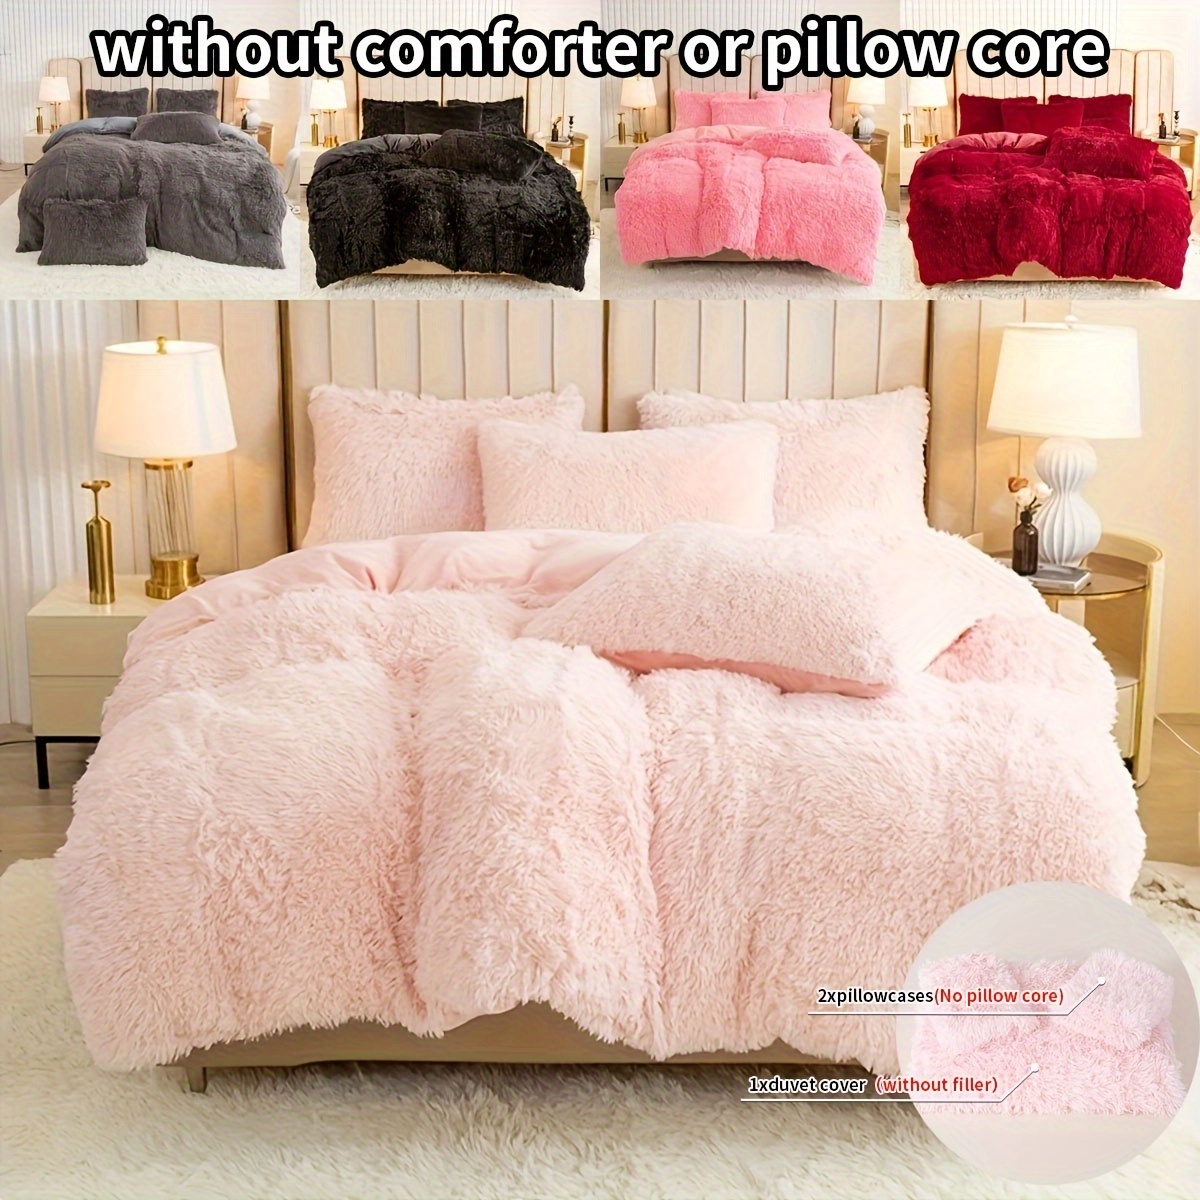 

3pcs Multi-color Polyester Bedding Set, 1pc * Duvet Cover + 2pcs * Pillowcase, Without Pillow Core